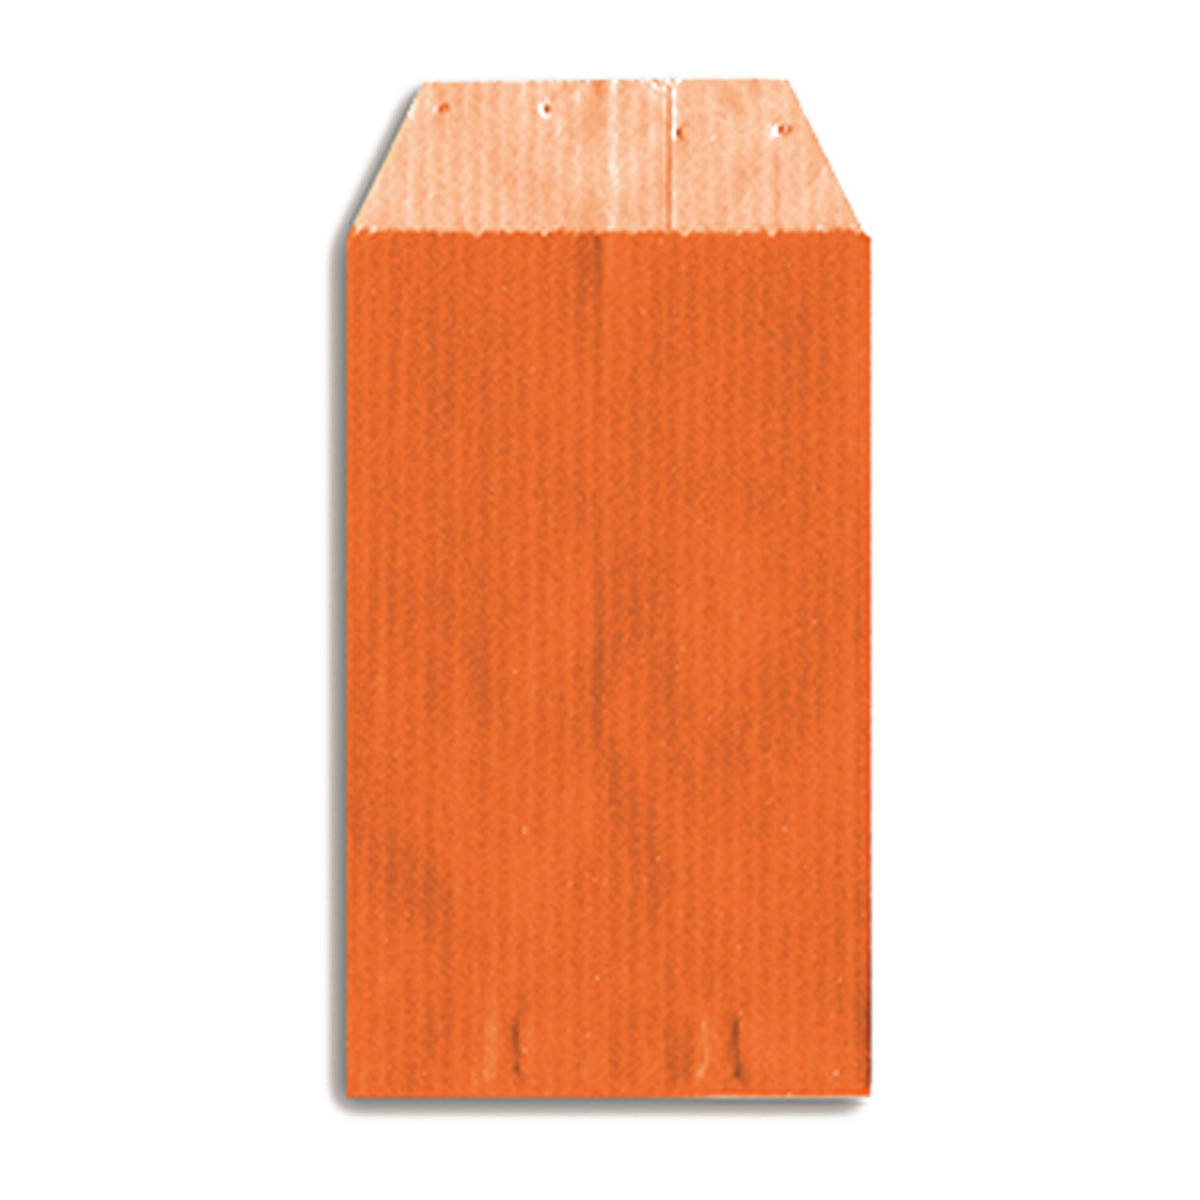 Envelope kraft laranja